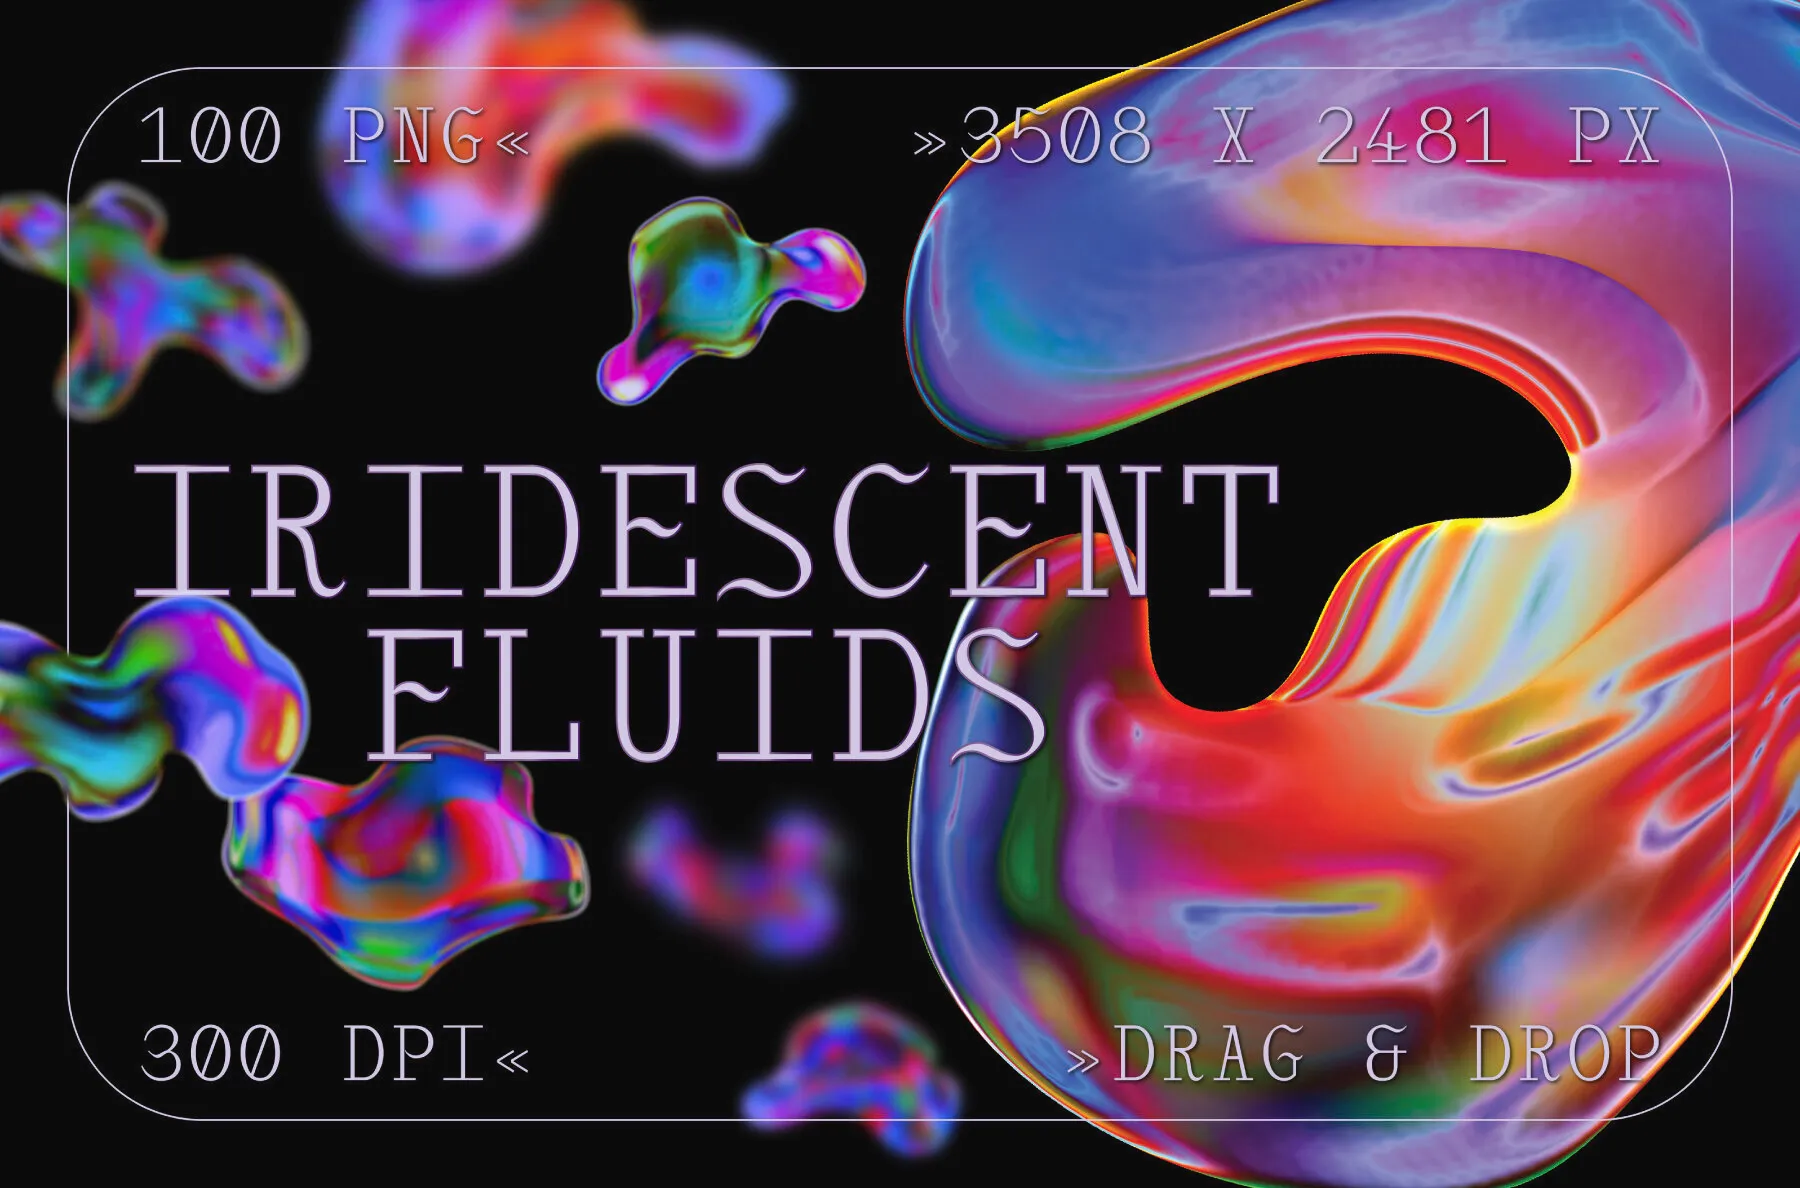 Iridescent Fluids